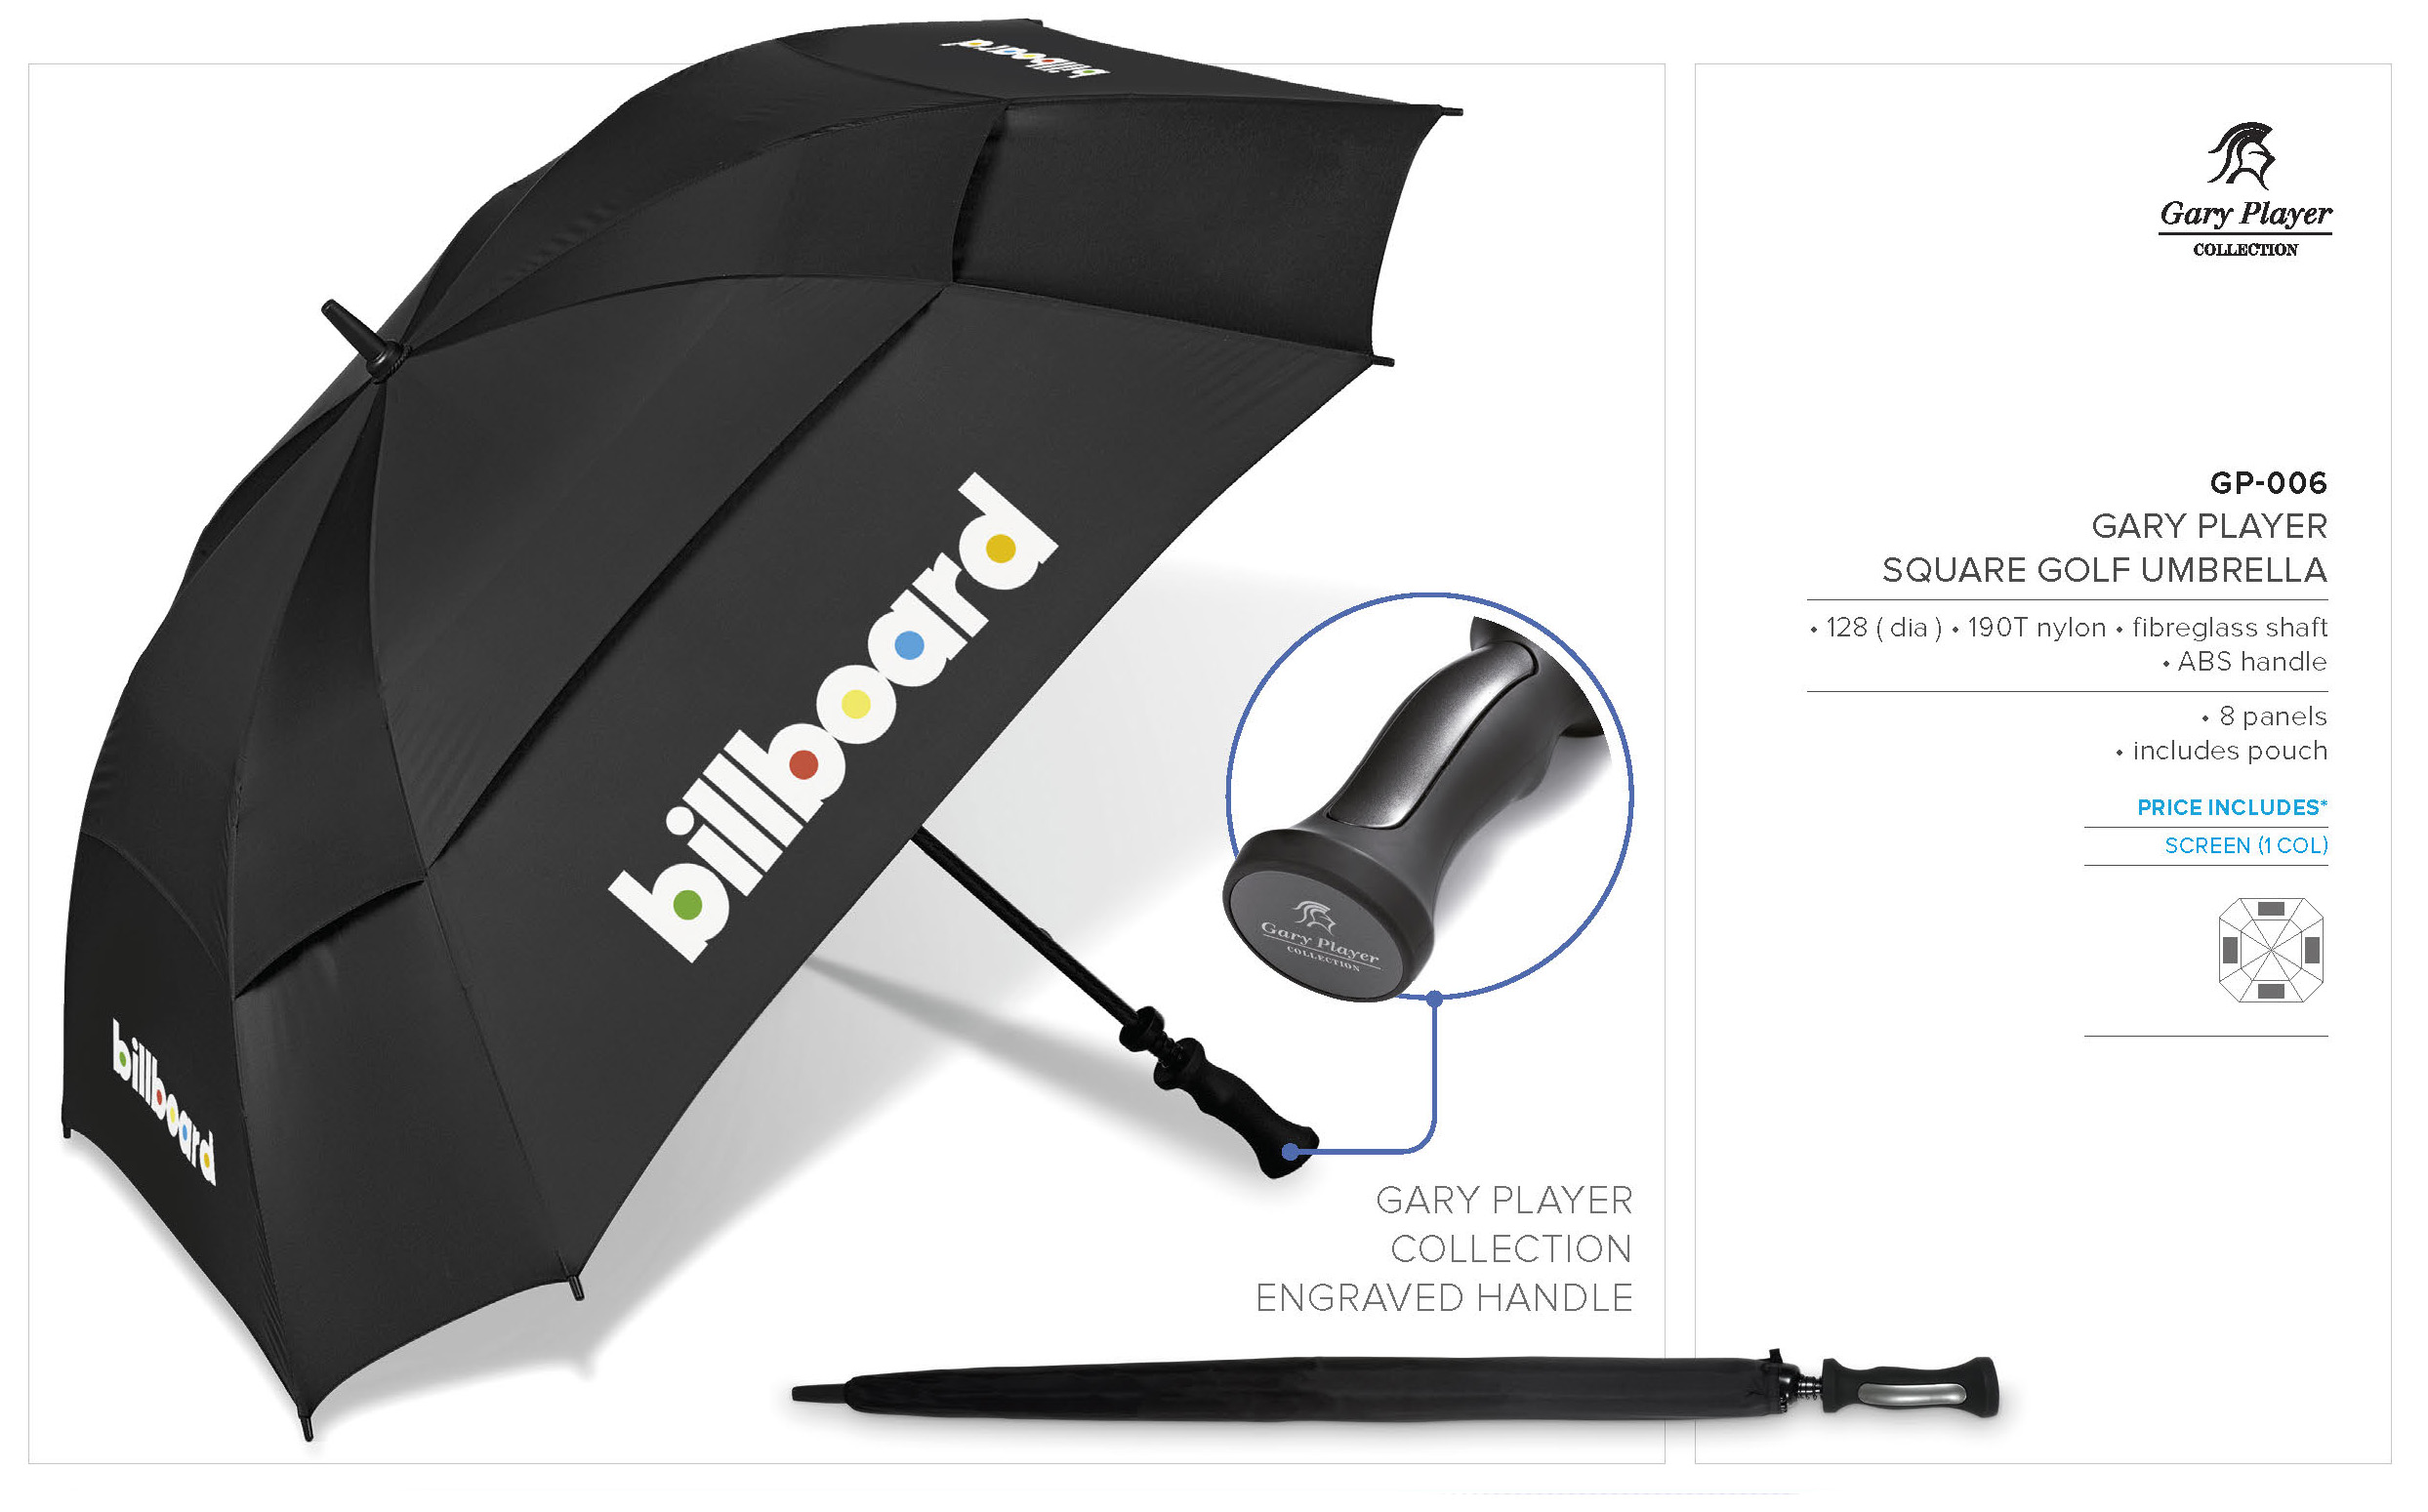 GP-006 - Gary Player Square Golf Umbrella - Catalogue Image